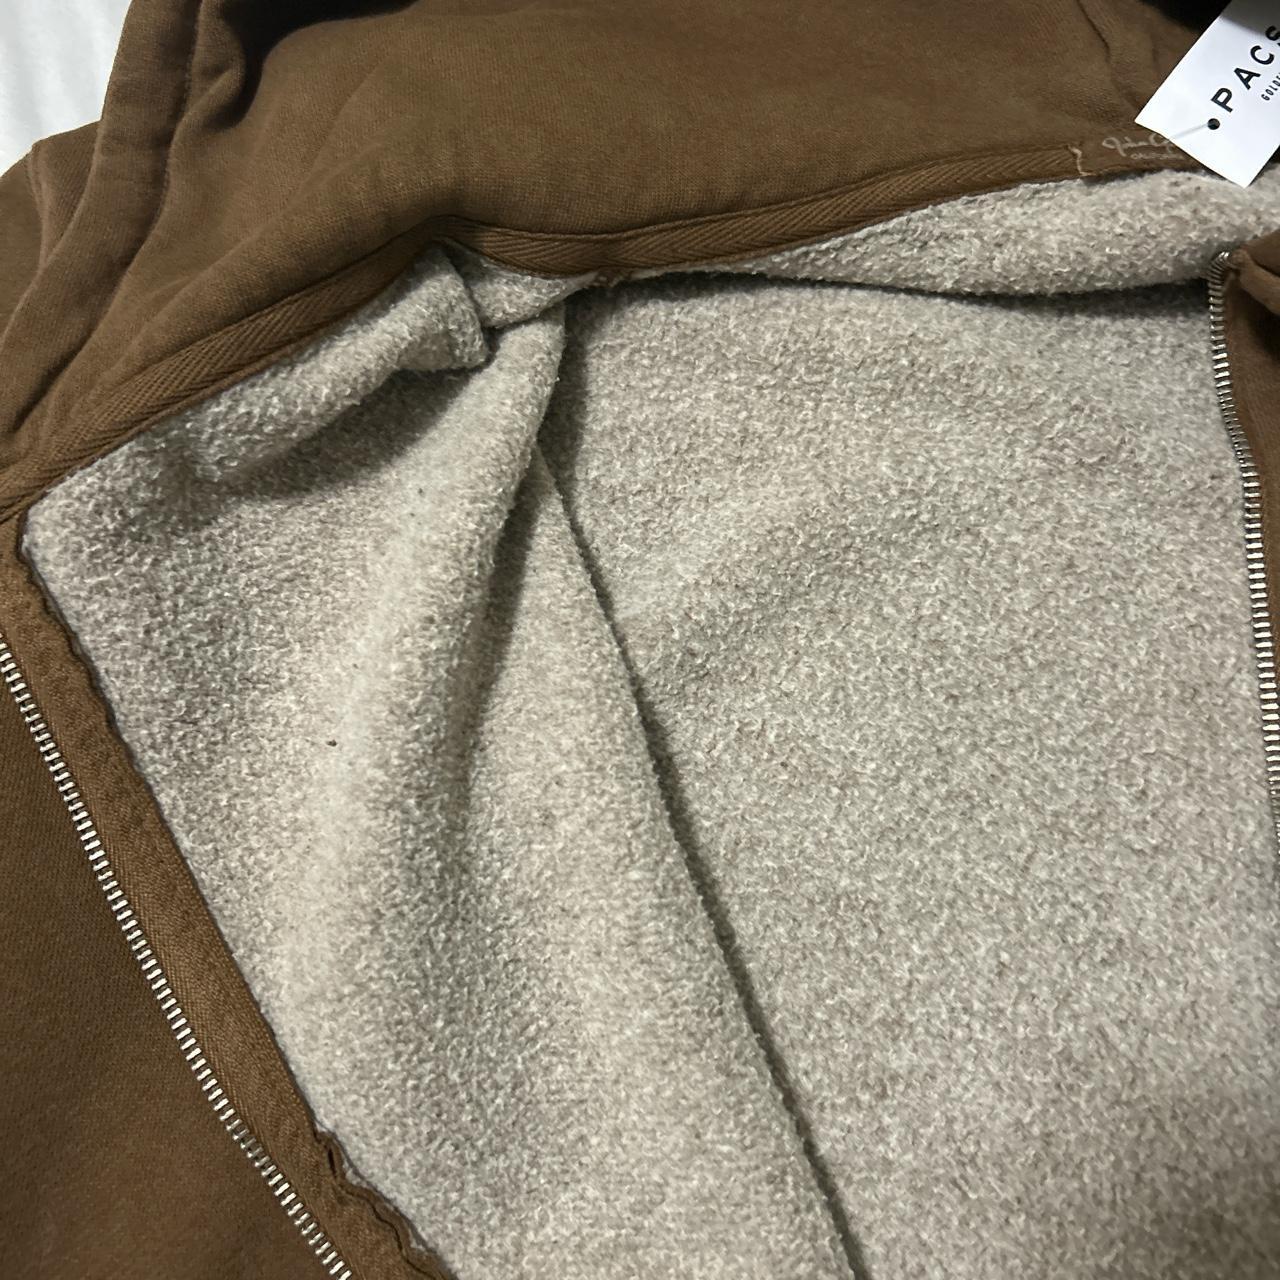 Oversized brown zip up, never worn - Depop